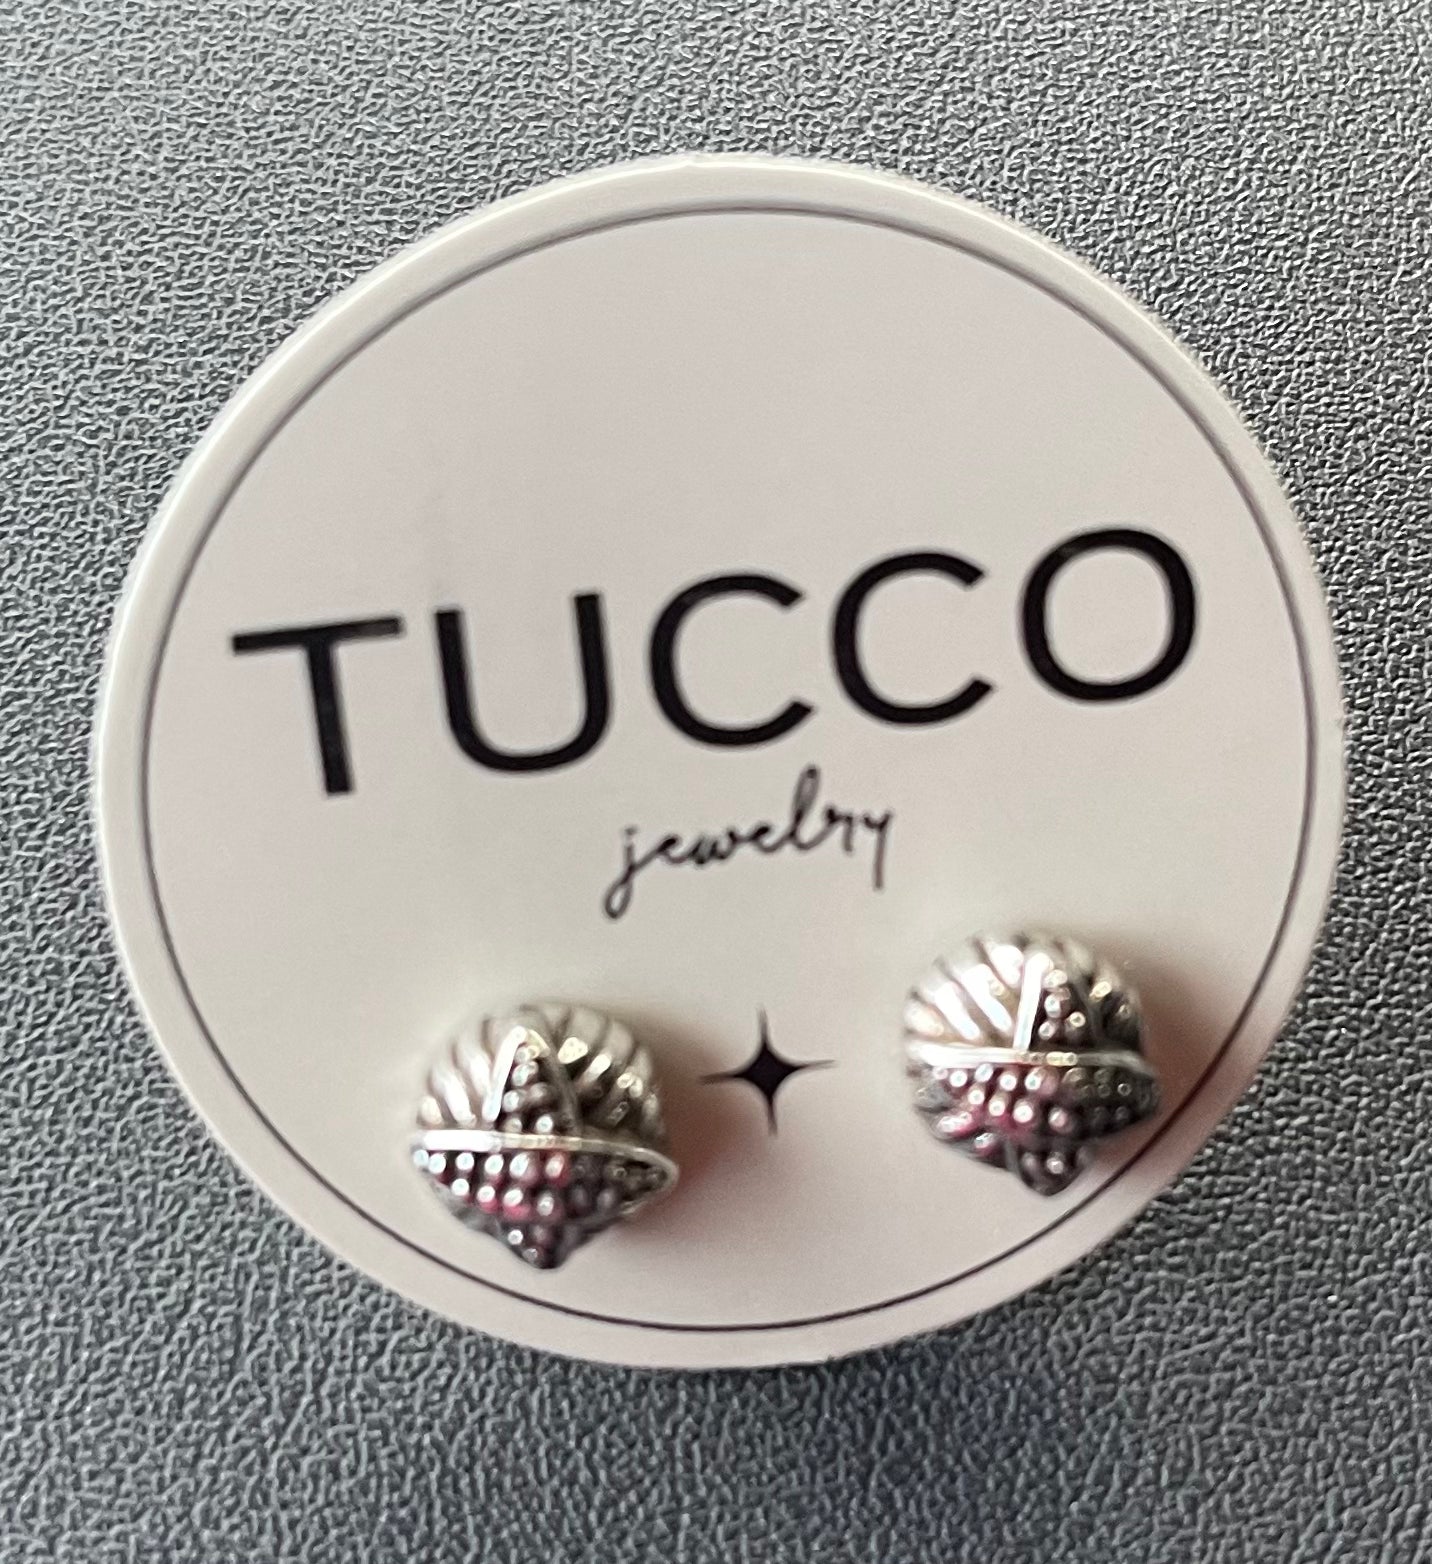 Tucco- Colección Sirocco